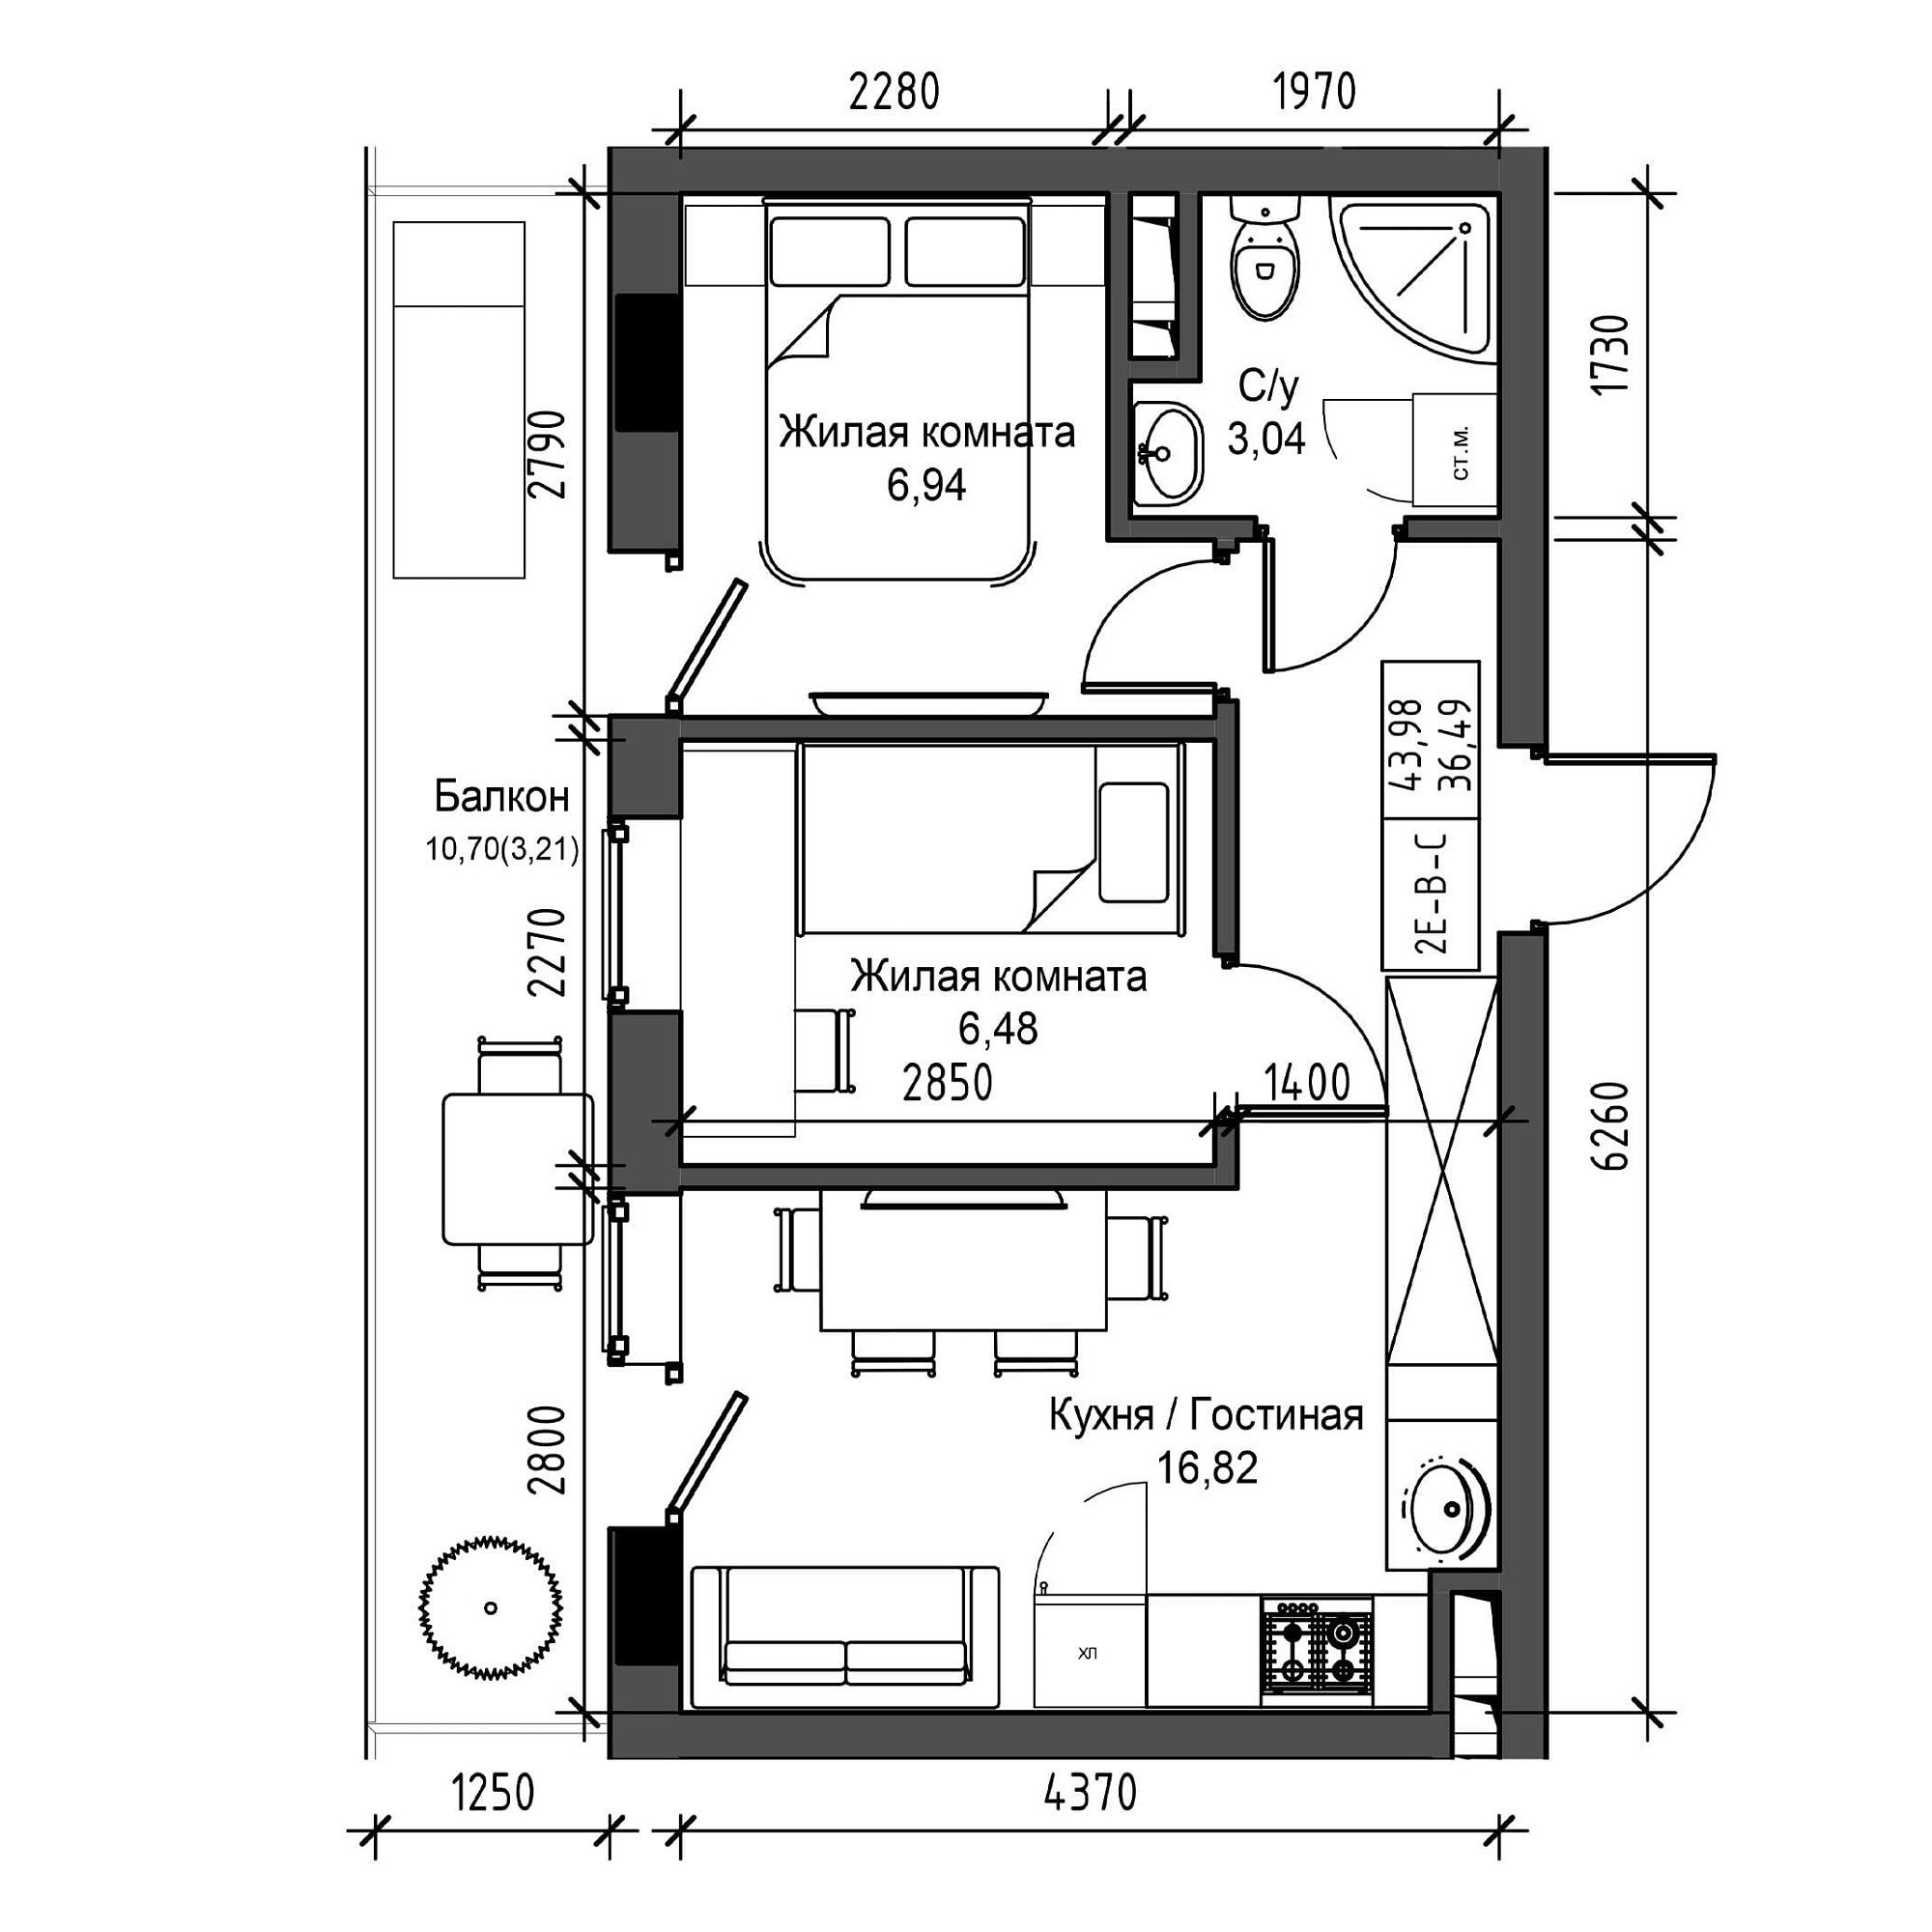 Планировка 2-к квартира площей 36.49м2, UM-001-04/0017.